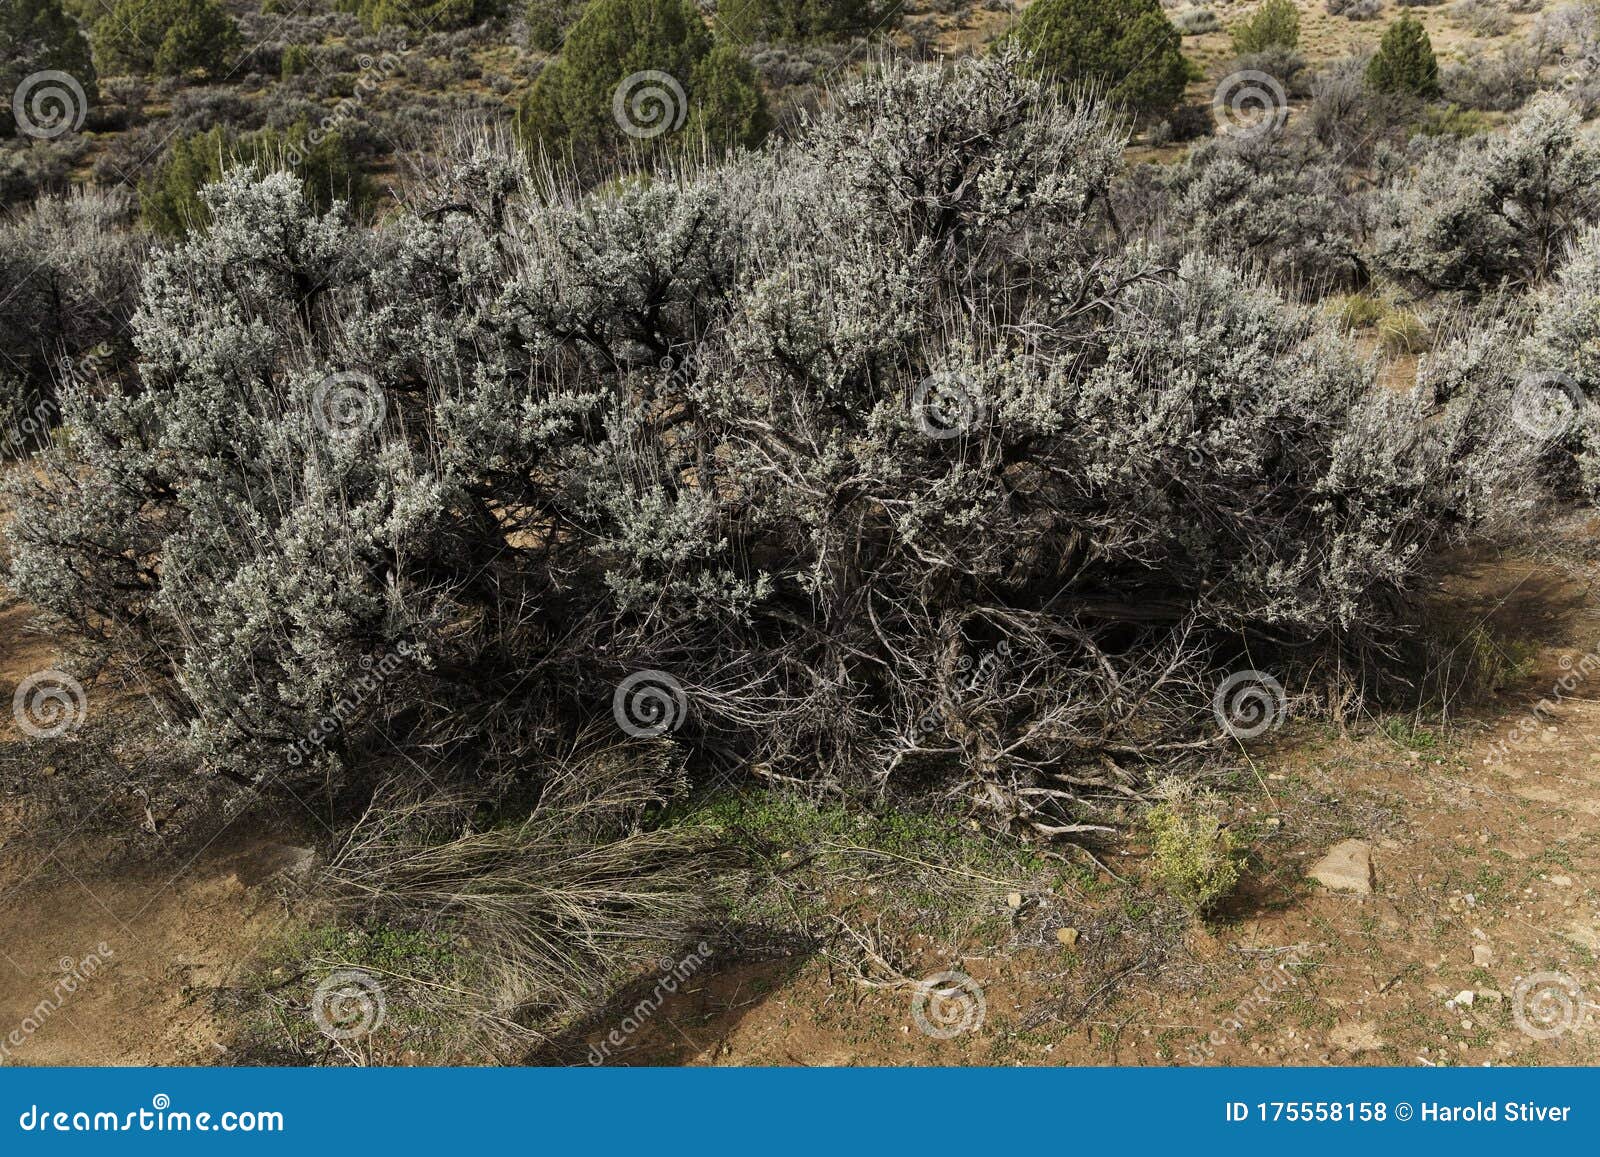 big sagebrush, artemisia tridentata, found in arid regions